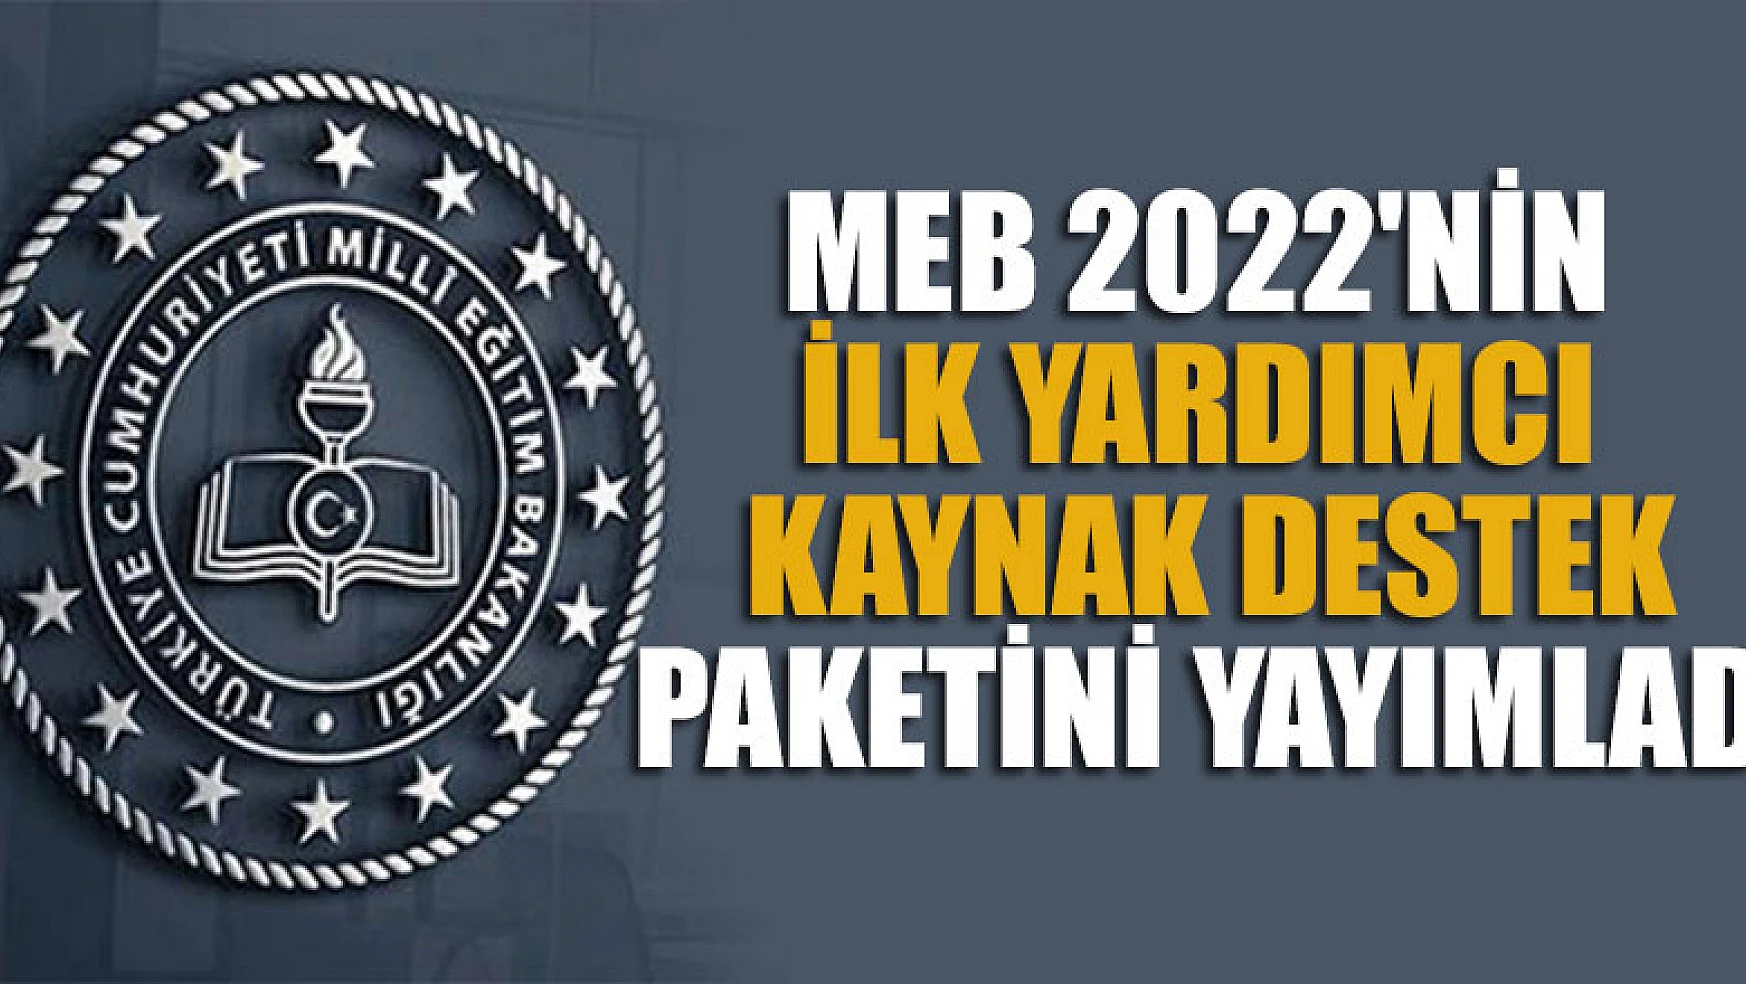 MEB, 2022'nin ilk yardımcı kaynak destek paketini yayımladı